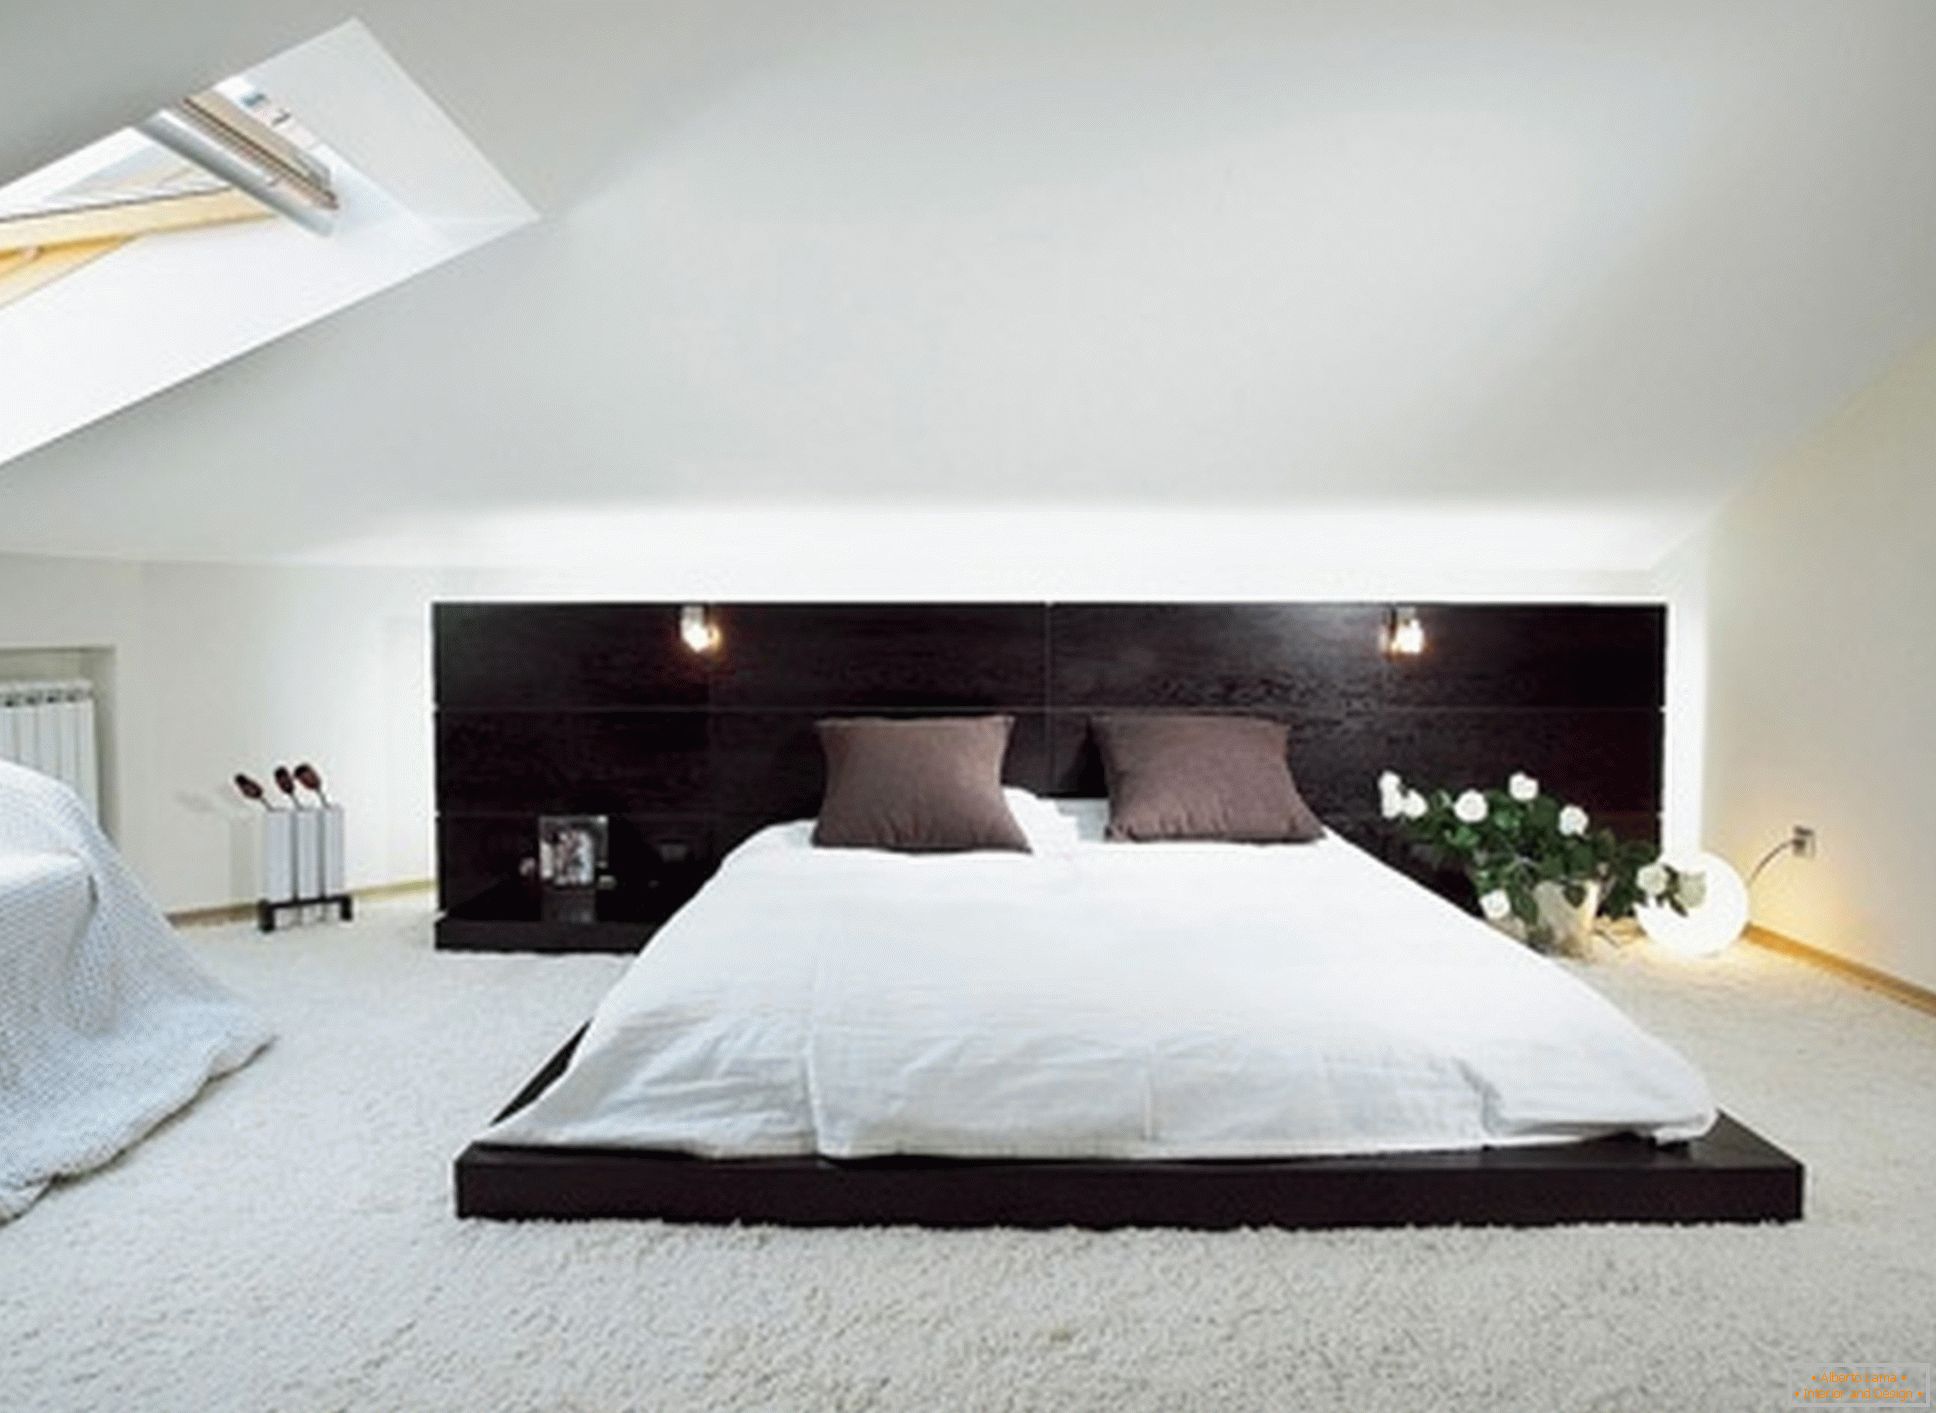 Luxus hálószoba a minimalizmus stílusában - egy példa egy sikeres kis szoba kialakítására a padláson.